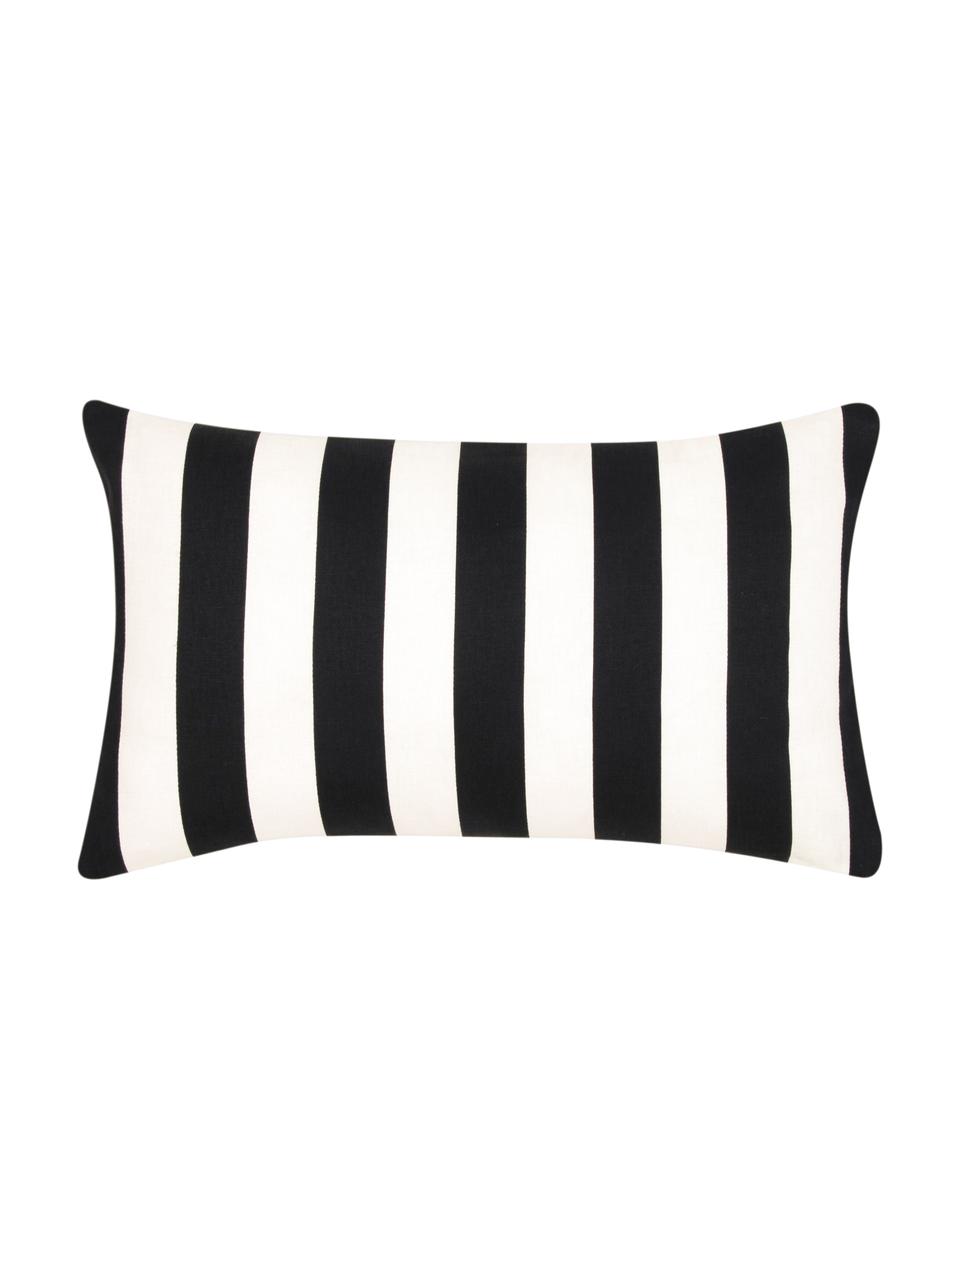 Gestreifte Kissenhülle Timon in Schwarz/Weiß, 100% Baumwolle, Schwarz, Weiß, B 30 x L 50 cm